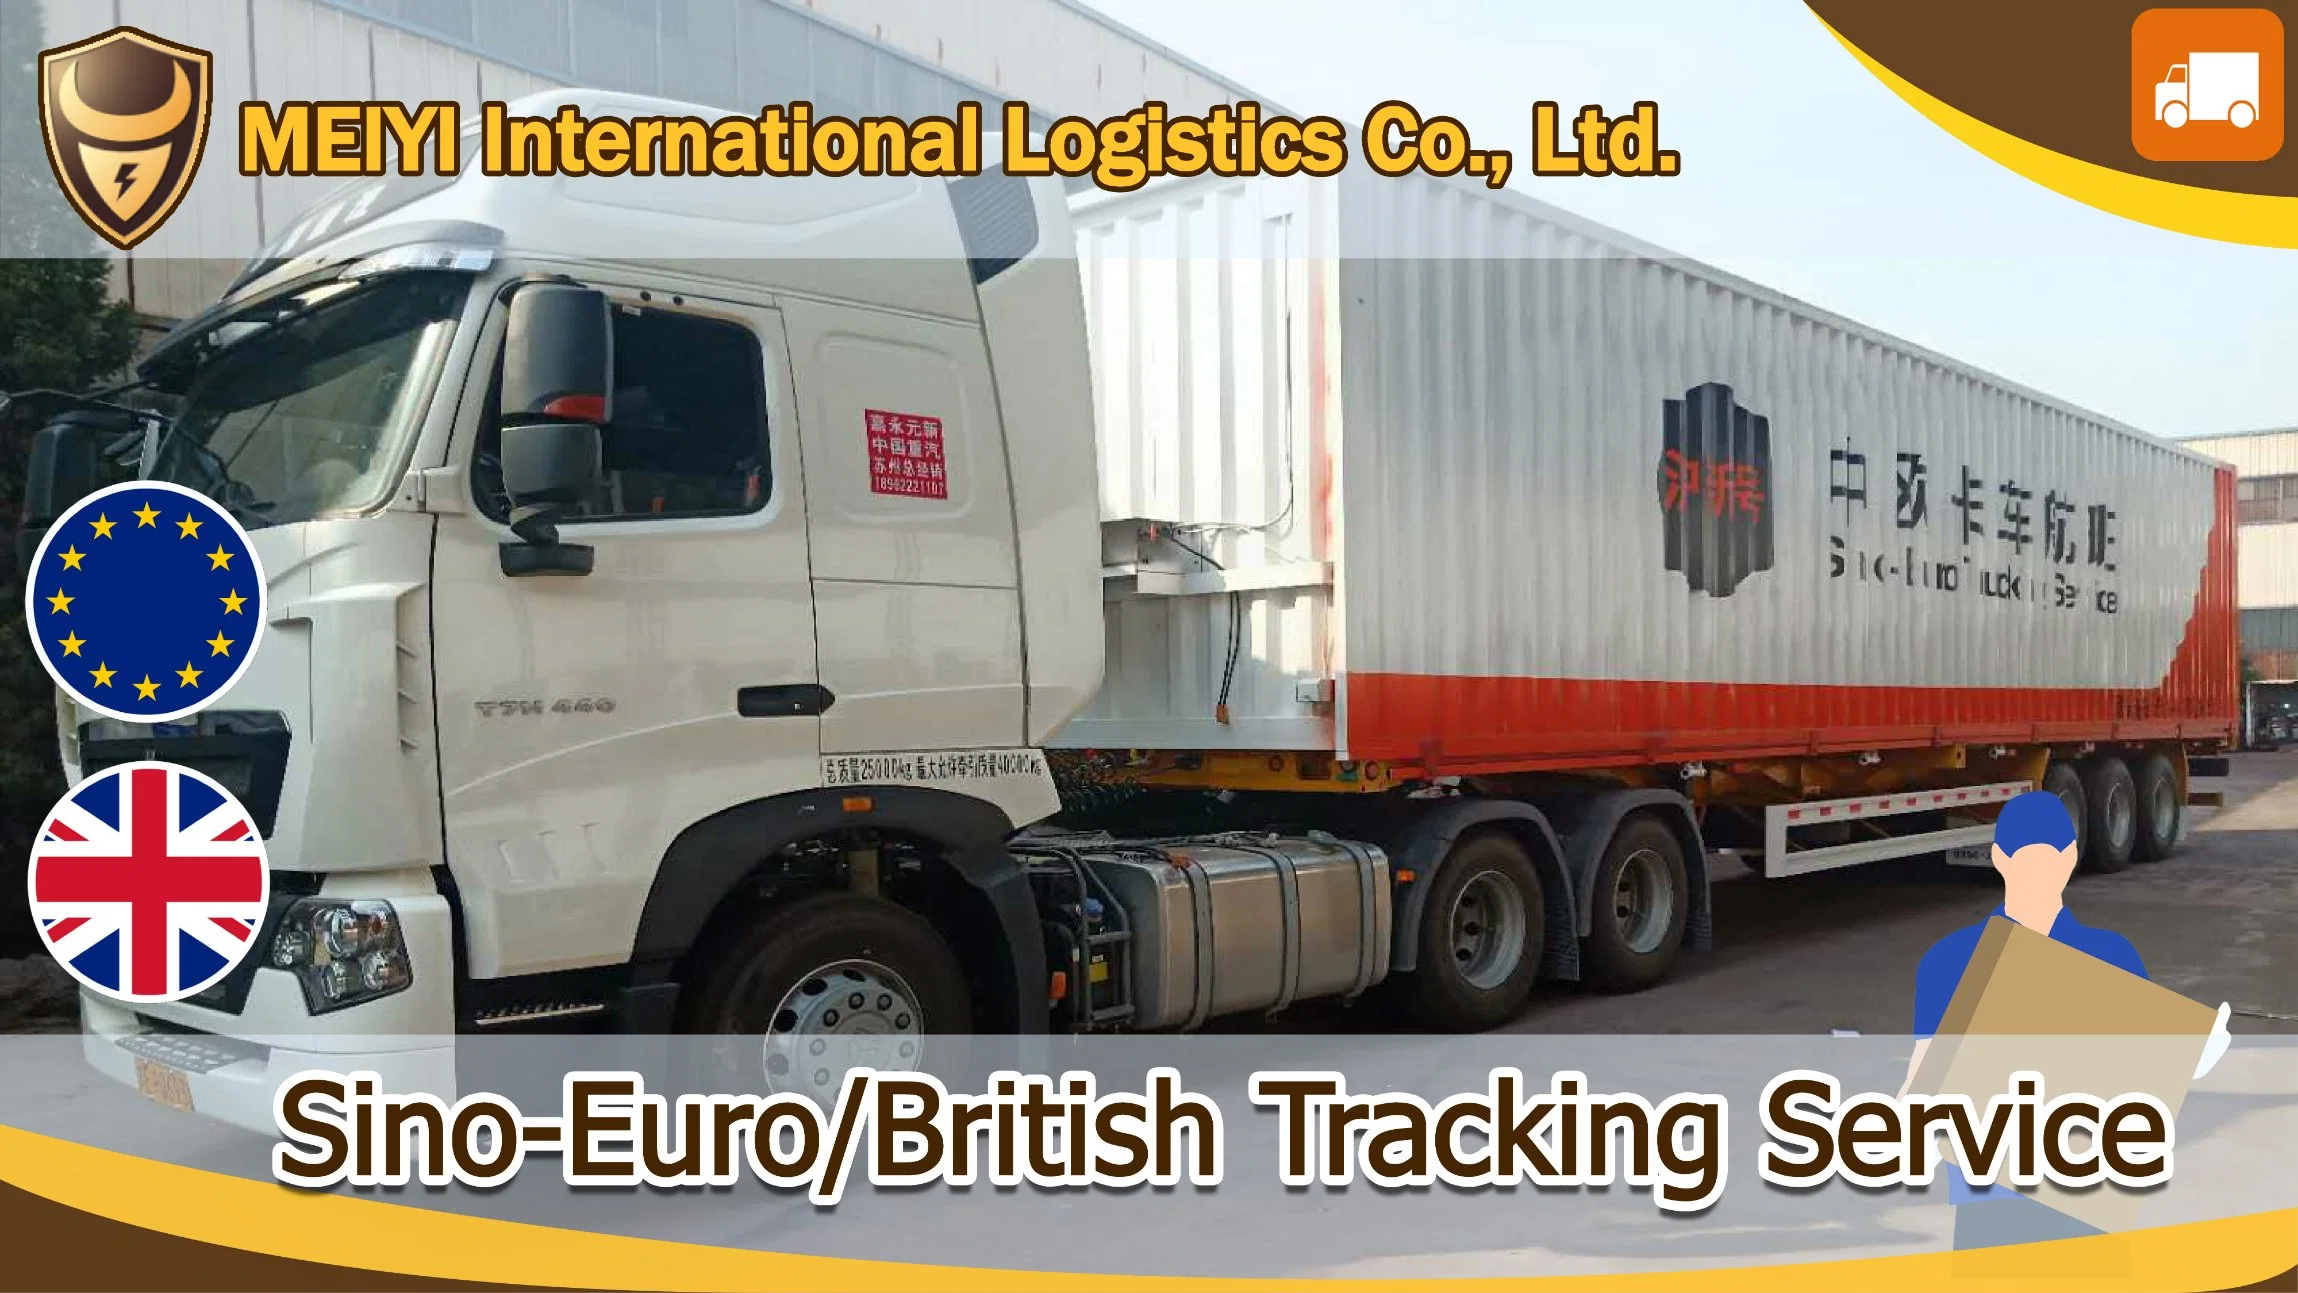 DDP Sino-Euro camiones de servicio: a checo de China por parte de la logística del transportista consignatario alibaba express